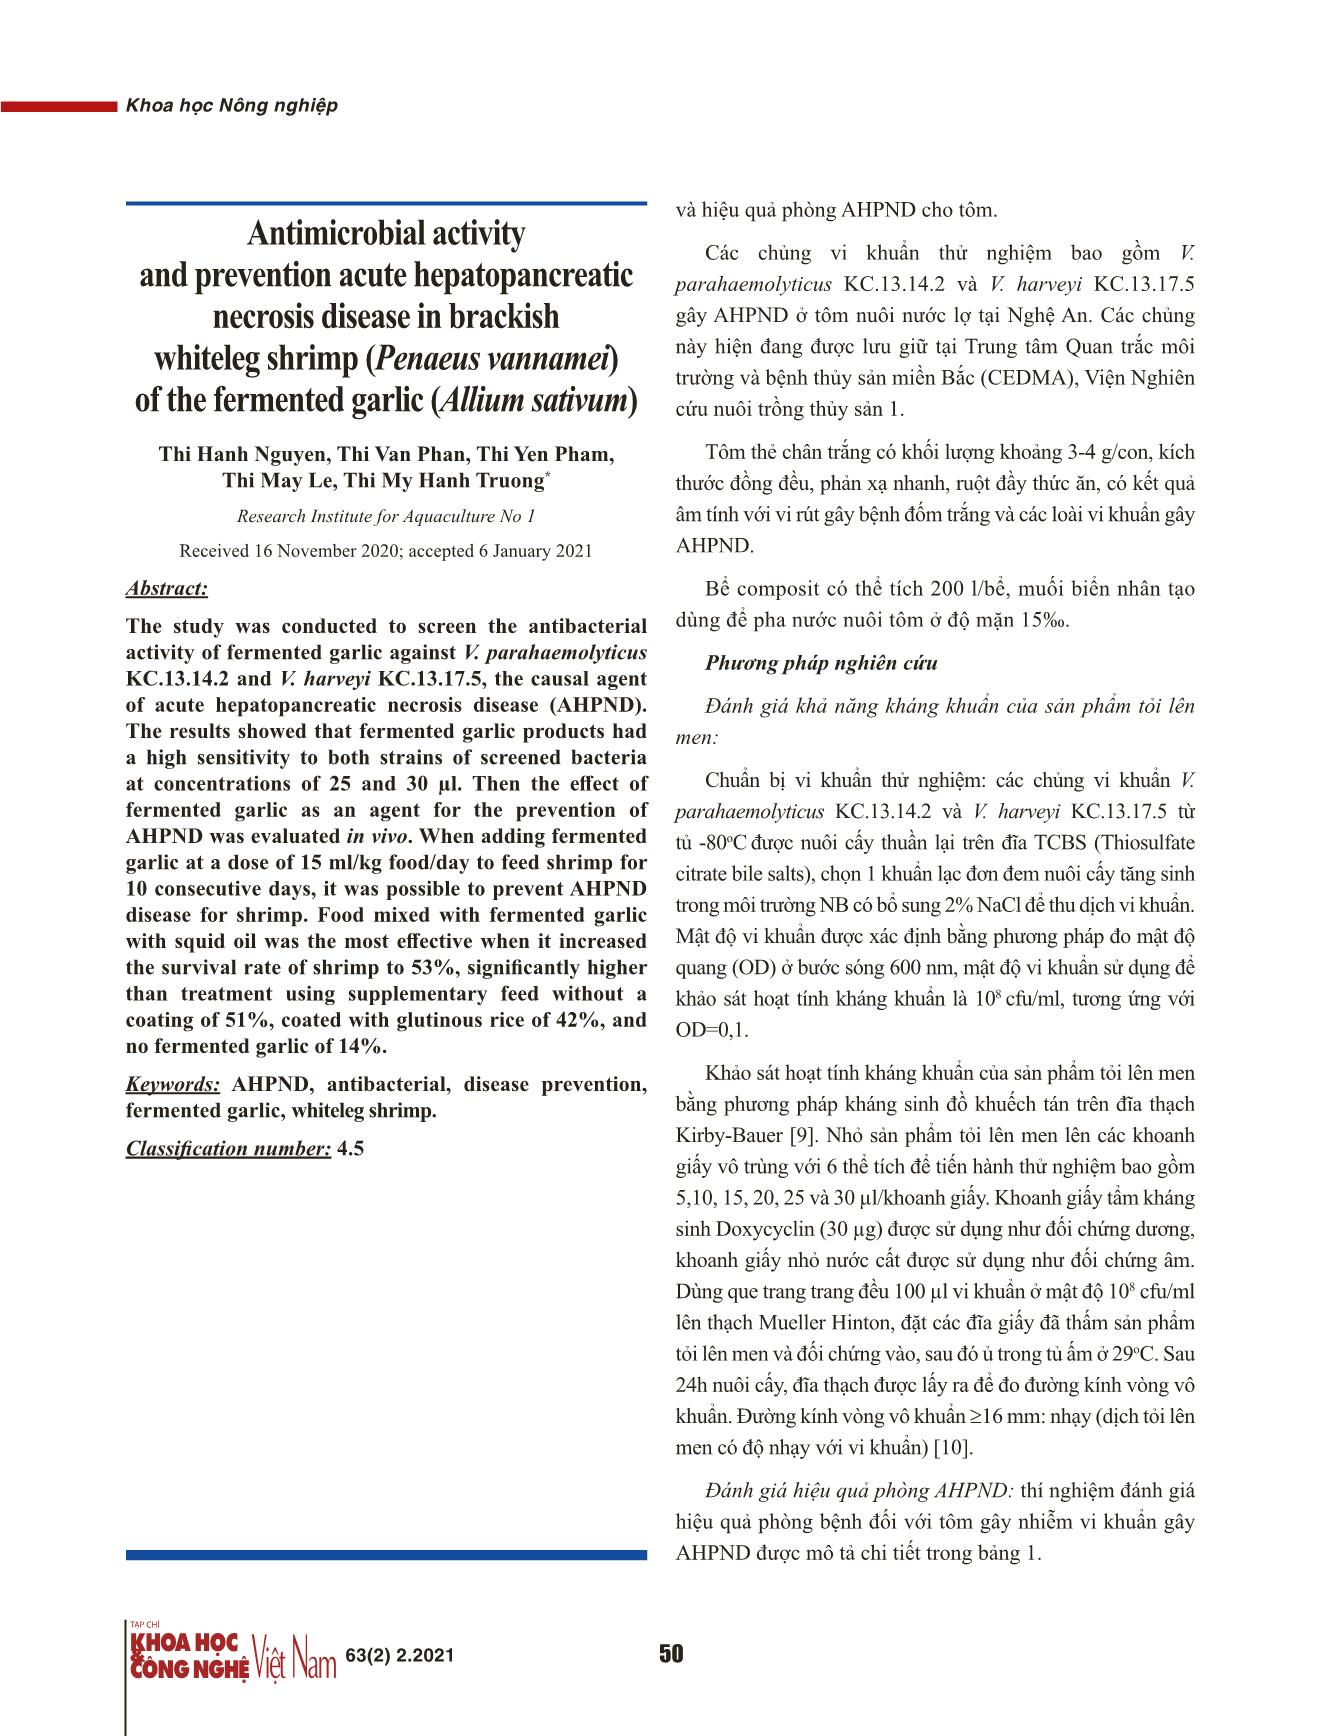 Khả năng kháng khuẩn và phòng bệnh hoại tử gan tụy cấp ở tôm thẻ chân trắng (Penaeus vannamei) của tỏi (Allum sativum) lên men trang 2